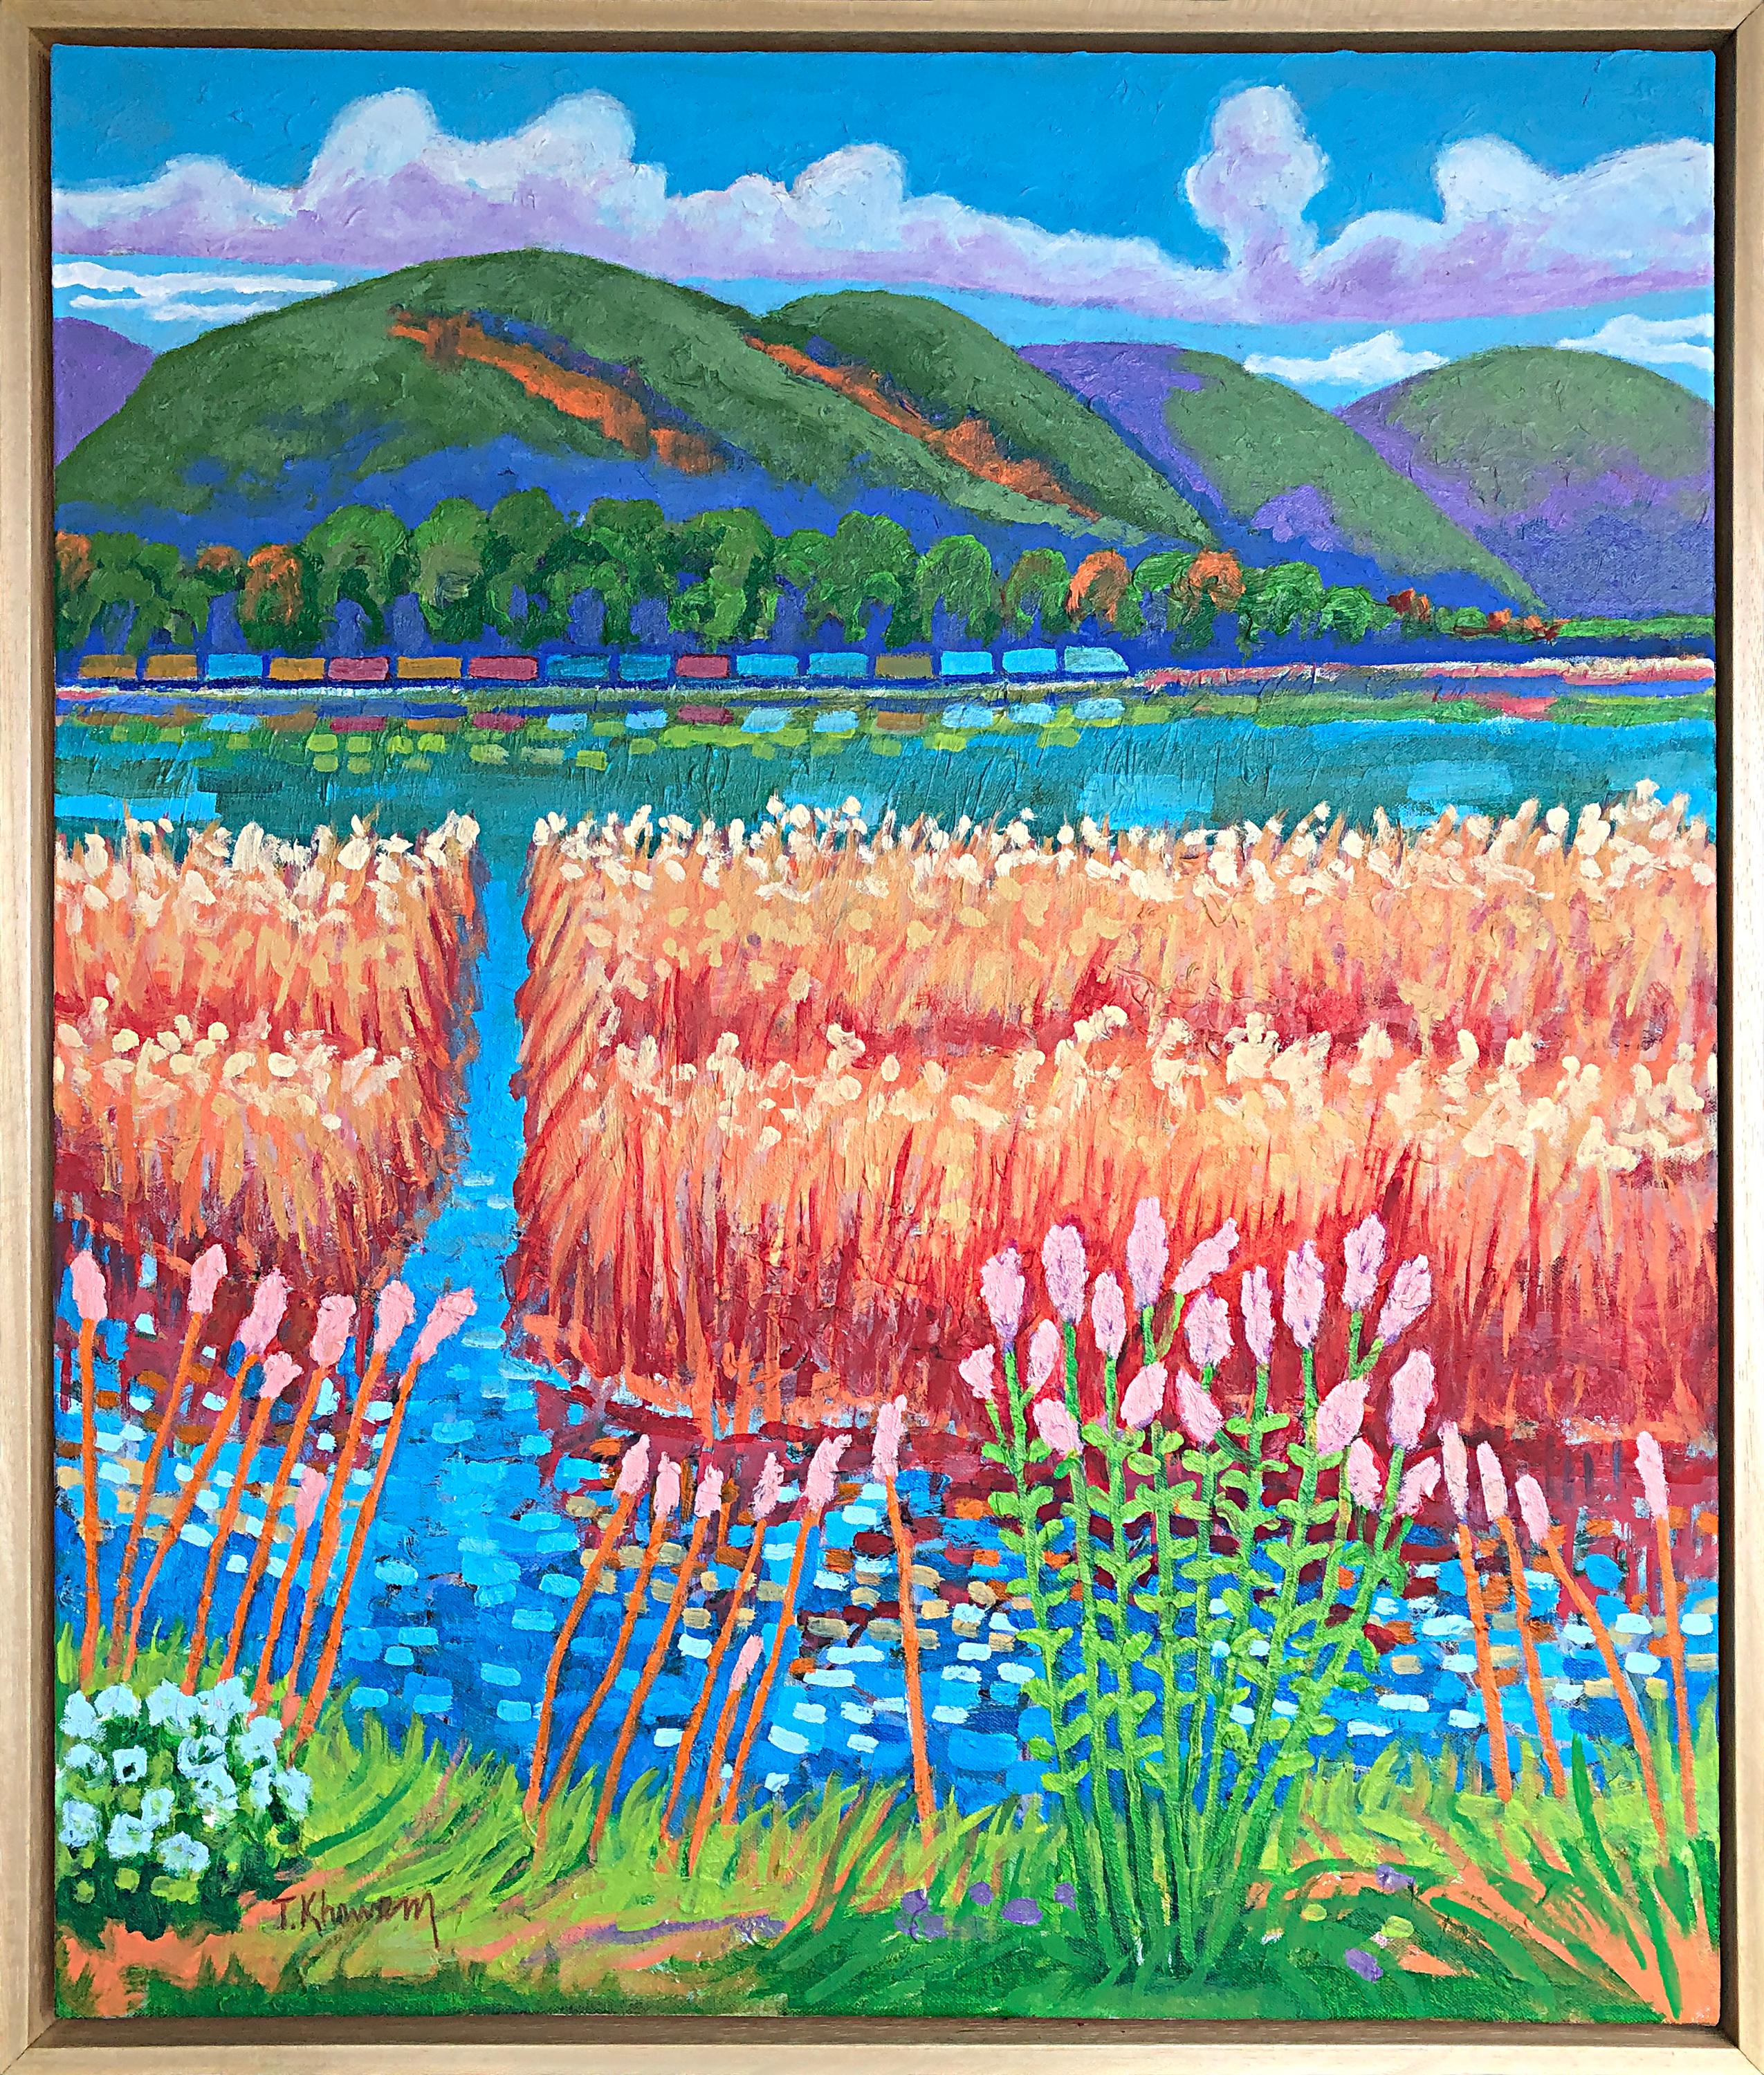 Tony Khawam Landscape Painting - Marshland on the Hudson